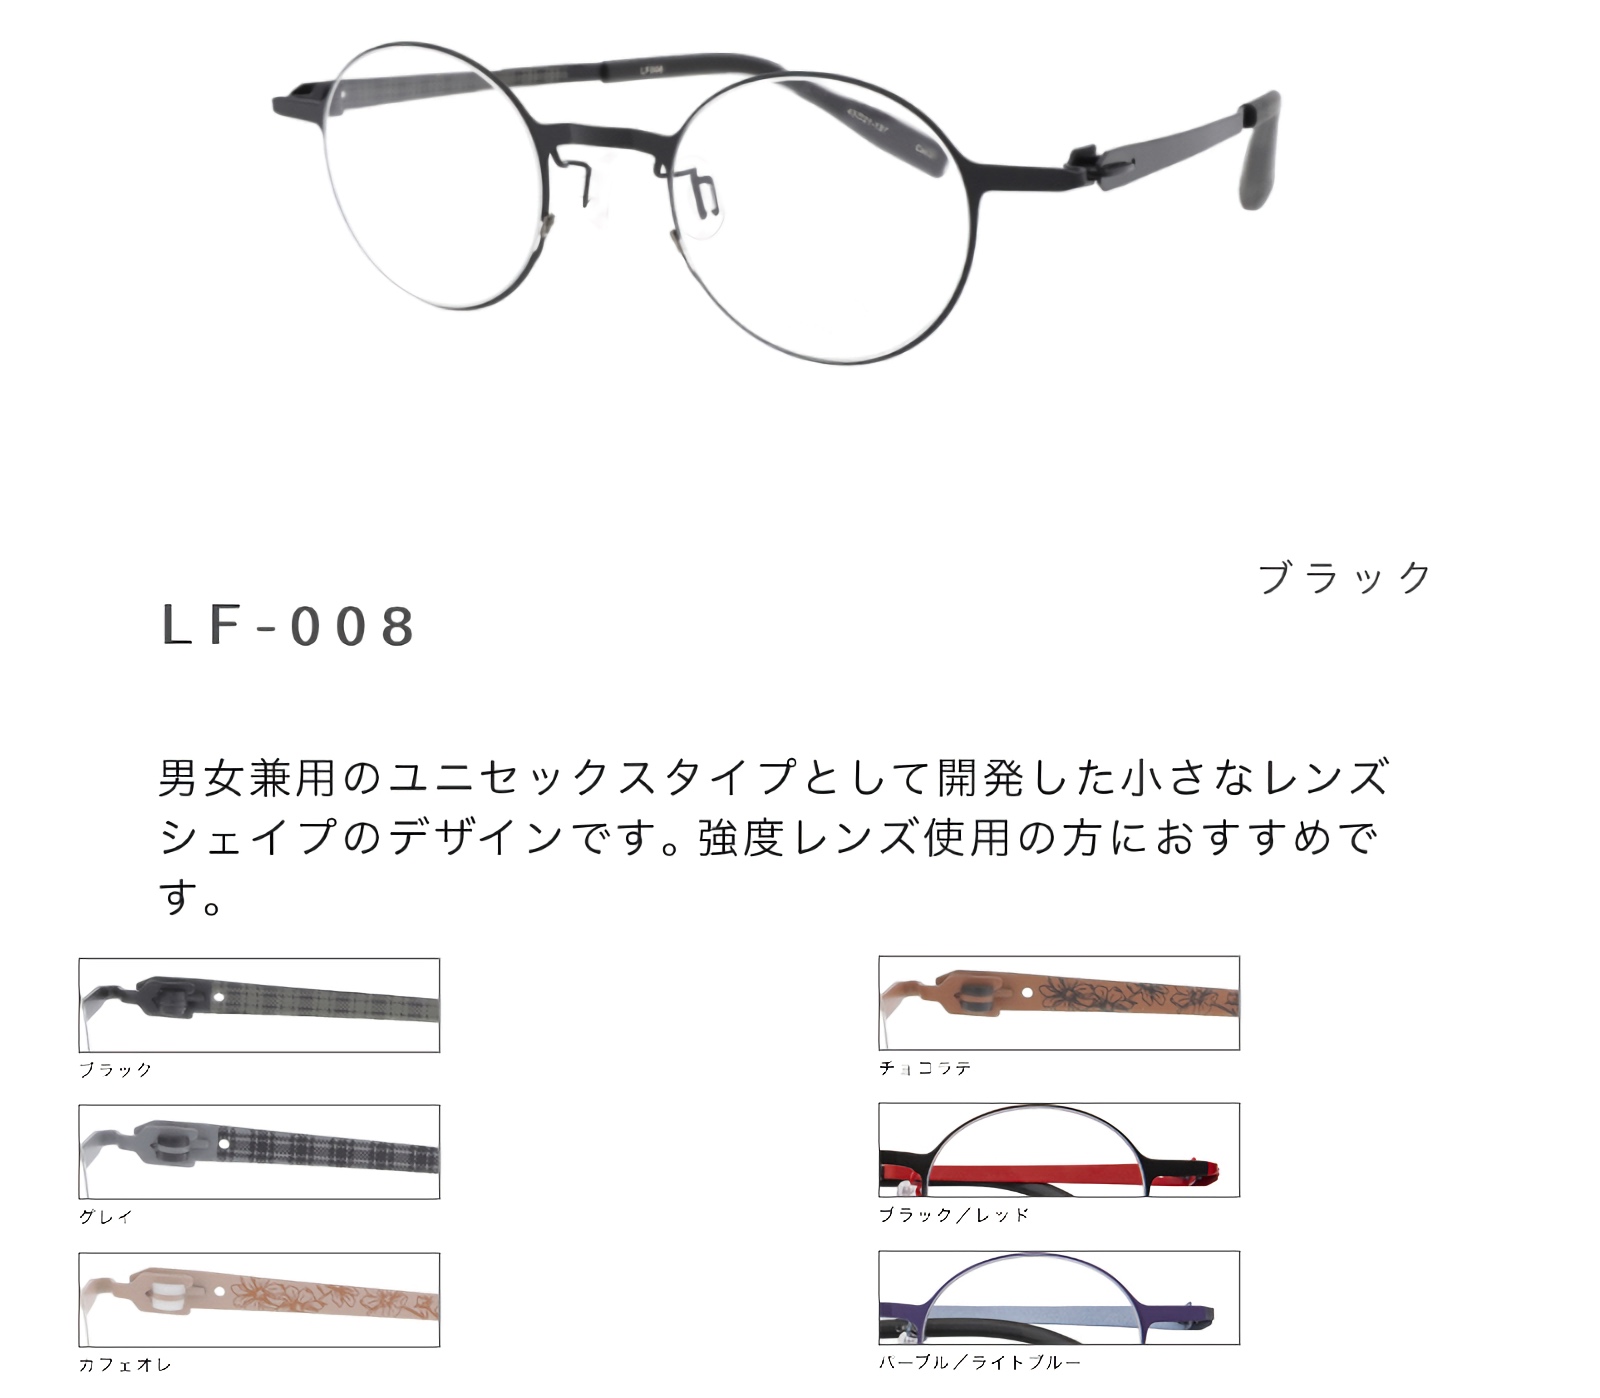 セイコー 眼鏡フレーム LF-008